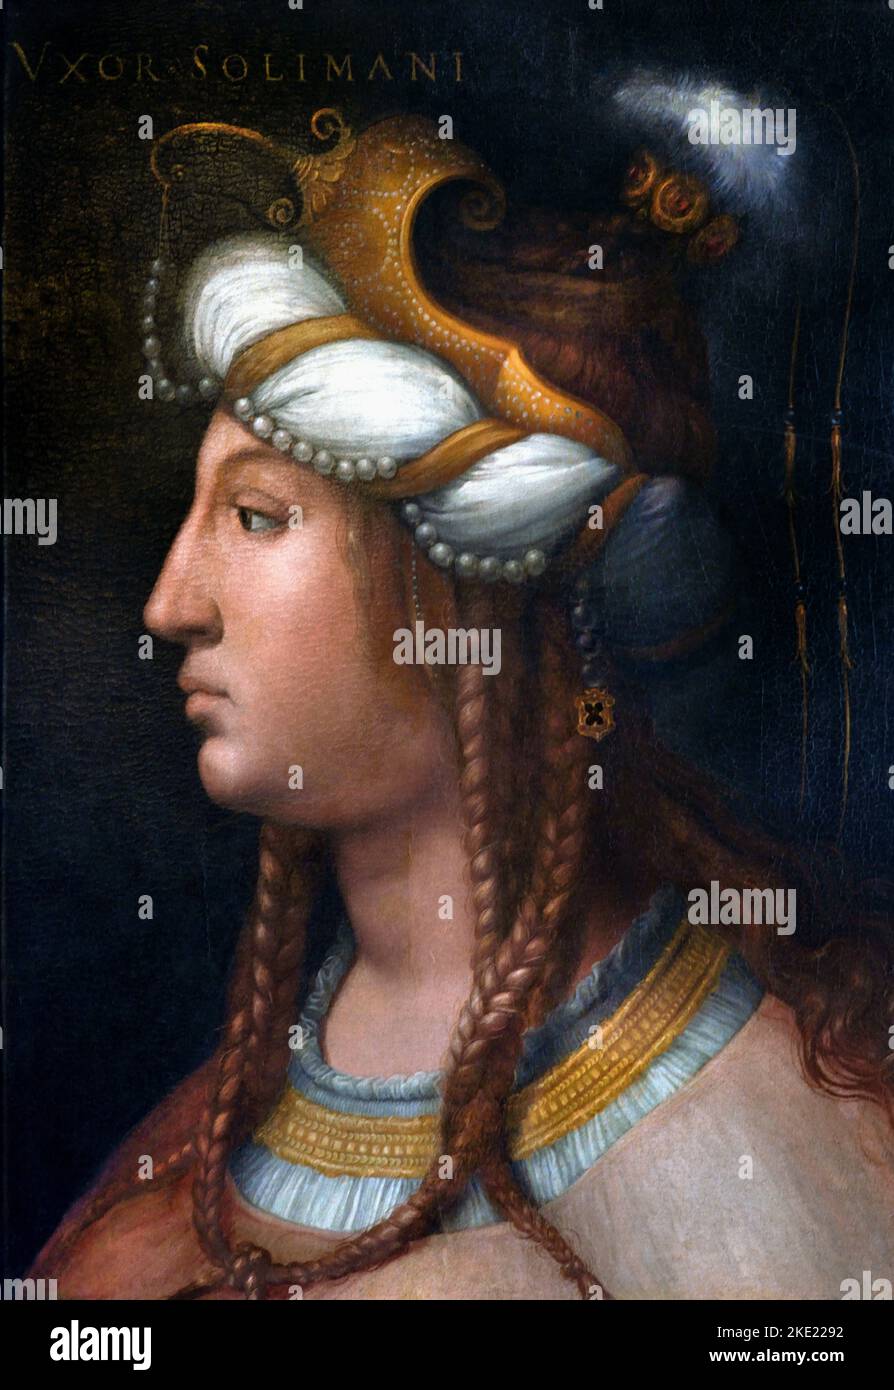 Roxelana, Ehefrau von Suleiman dem Magnificent (Rohatyn, um 1500 - Istanbul, 1558) Cristofano dell'Altissimo Piti Palace Florenz, Italien, Italienisch. Die ukrainische Roxelana war eine der mächtigsten Frauen des 16.. Jahrhunderts. Ihr Name war Anastasia Lisowska und sie wurde in der Nähe von Lemberg von den tatarischen Marodeutern entführt: Sie führte zum Harem von Suleiman, Mittlerin der Beziehungen, Frieden sowohl mit Polen als auch mit dem mächtigen Persien. Stockfoto